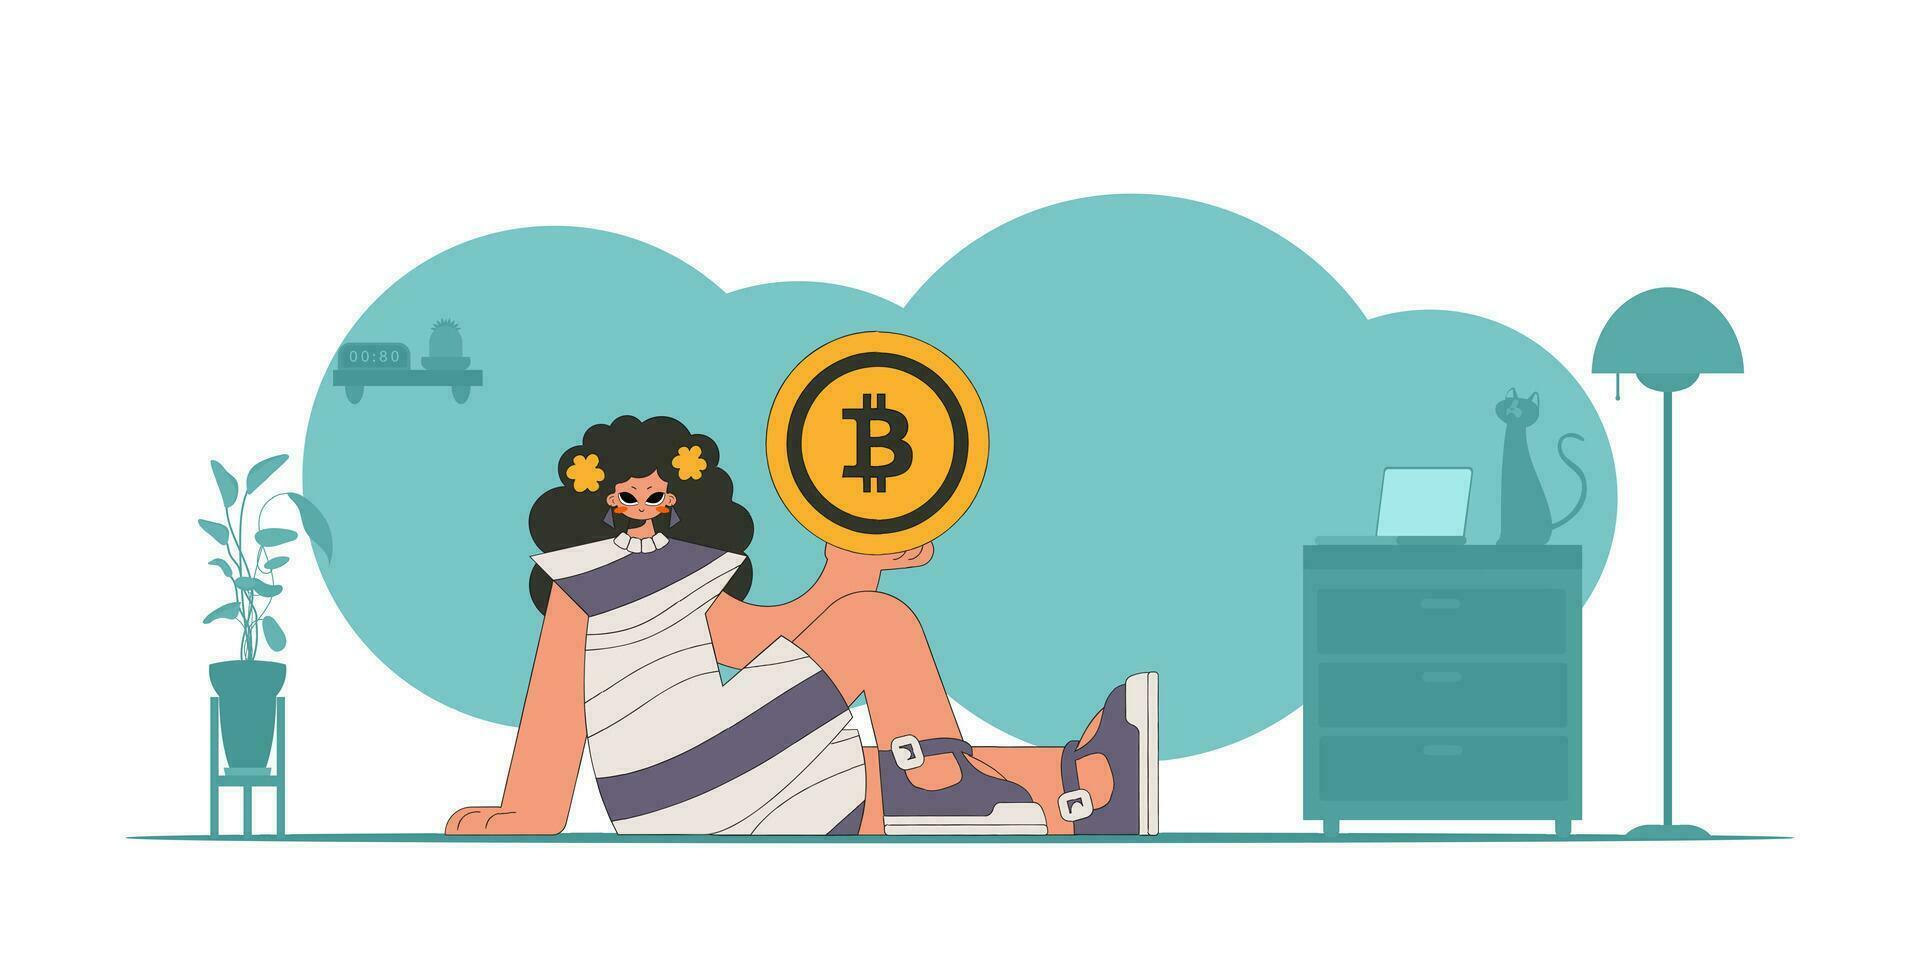 le fille est en portant une bitcoin pièce de monnaie. crypto-monnaie concept. vecteur